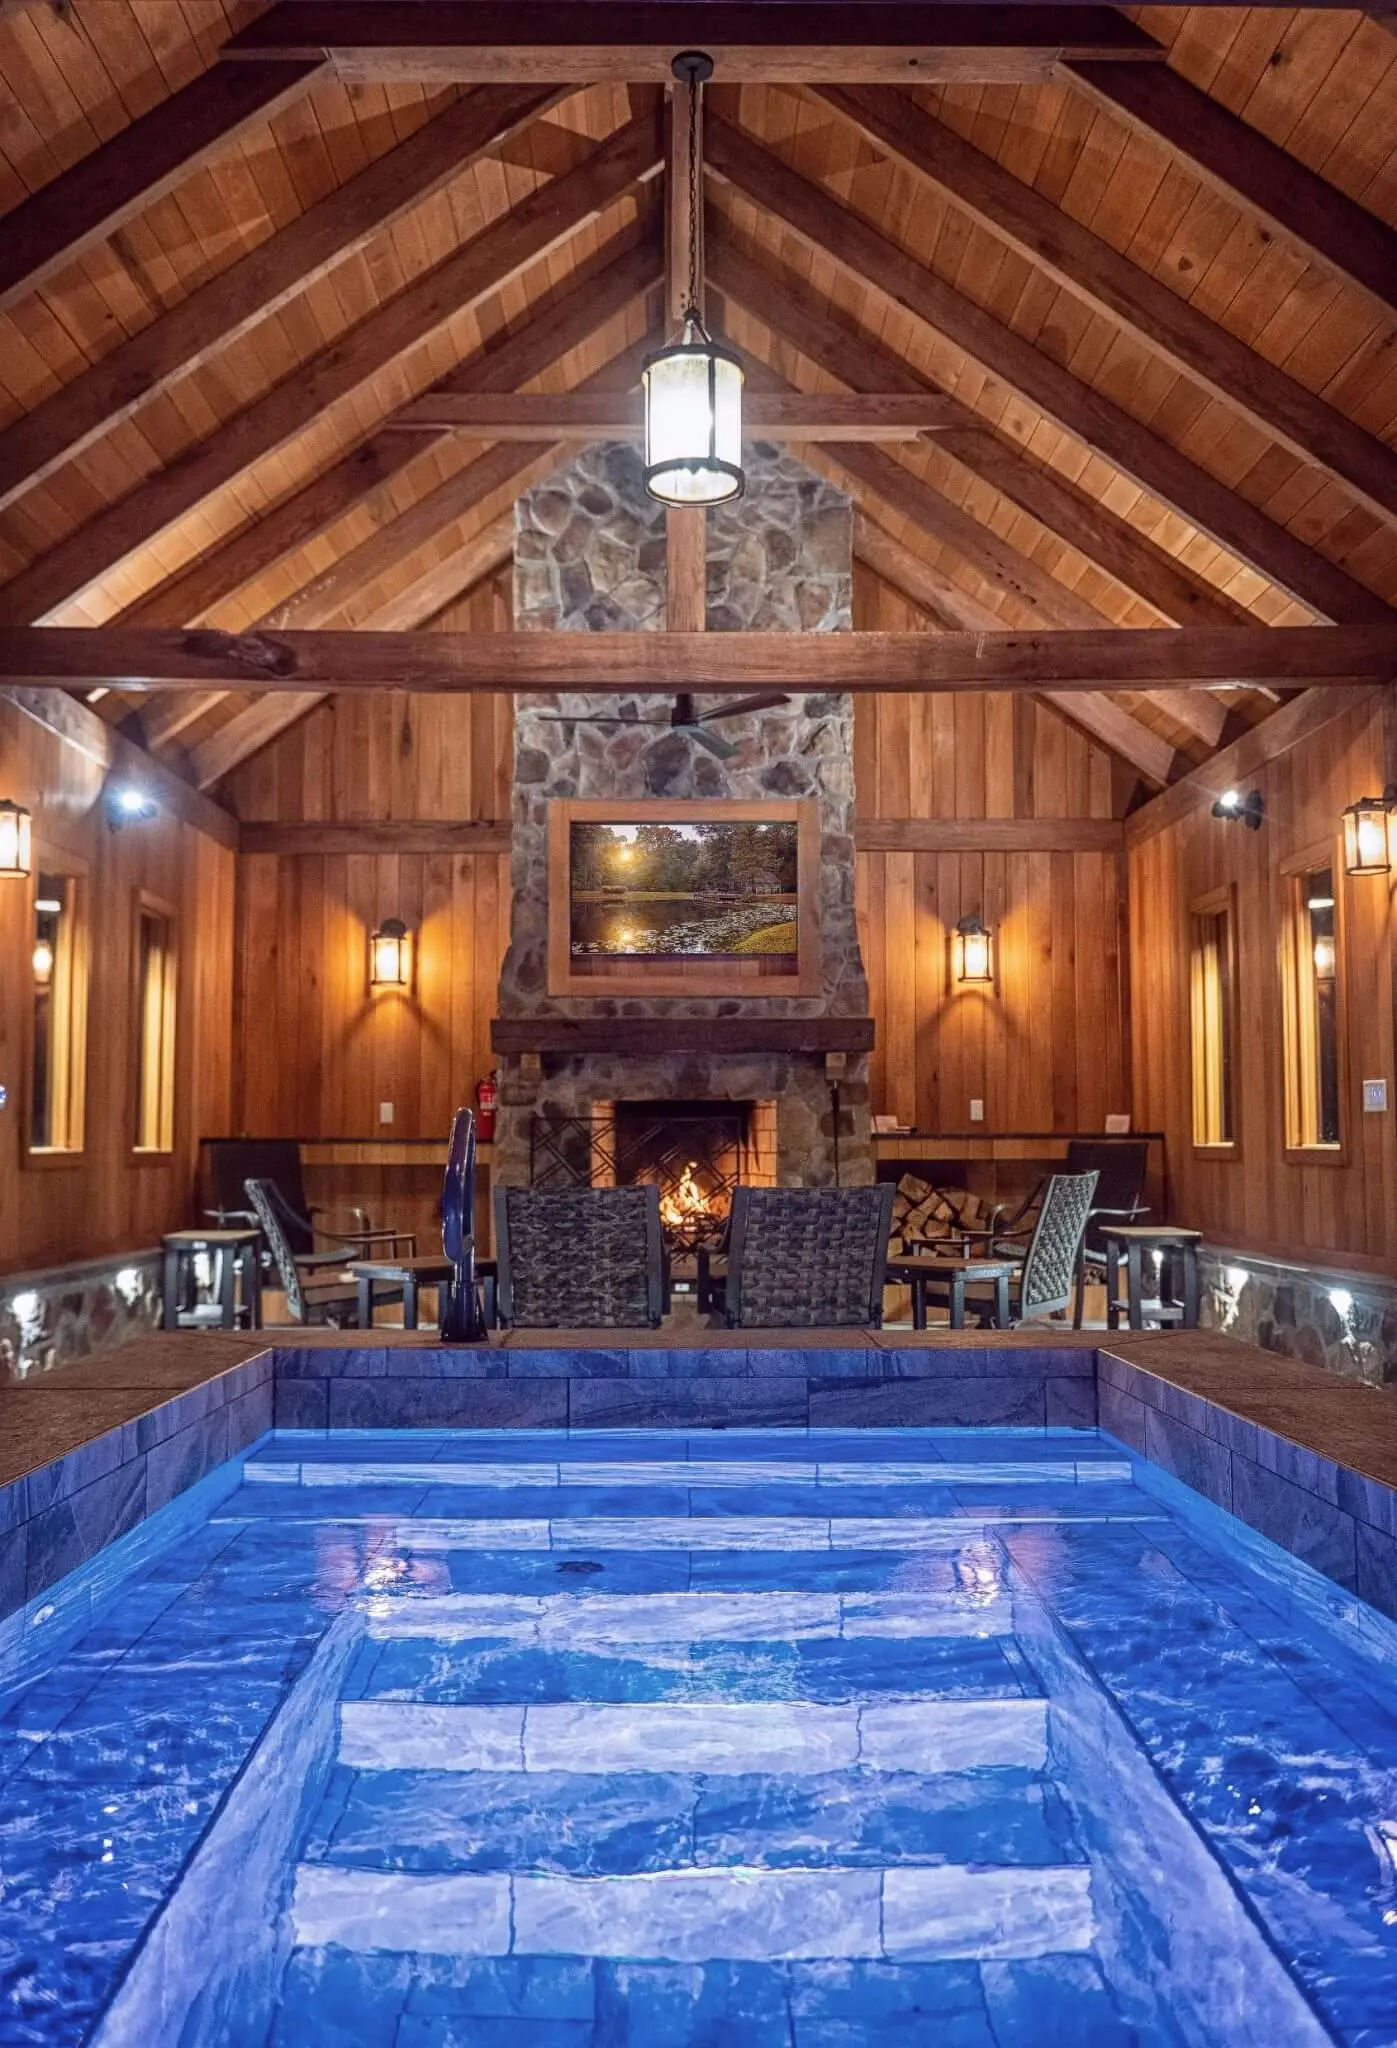 Rich blue plunge pool in a wooden gazebo